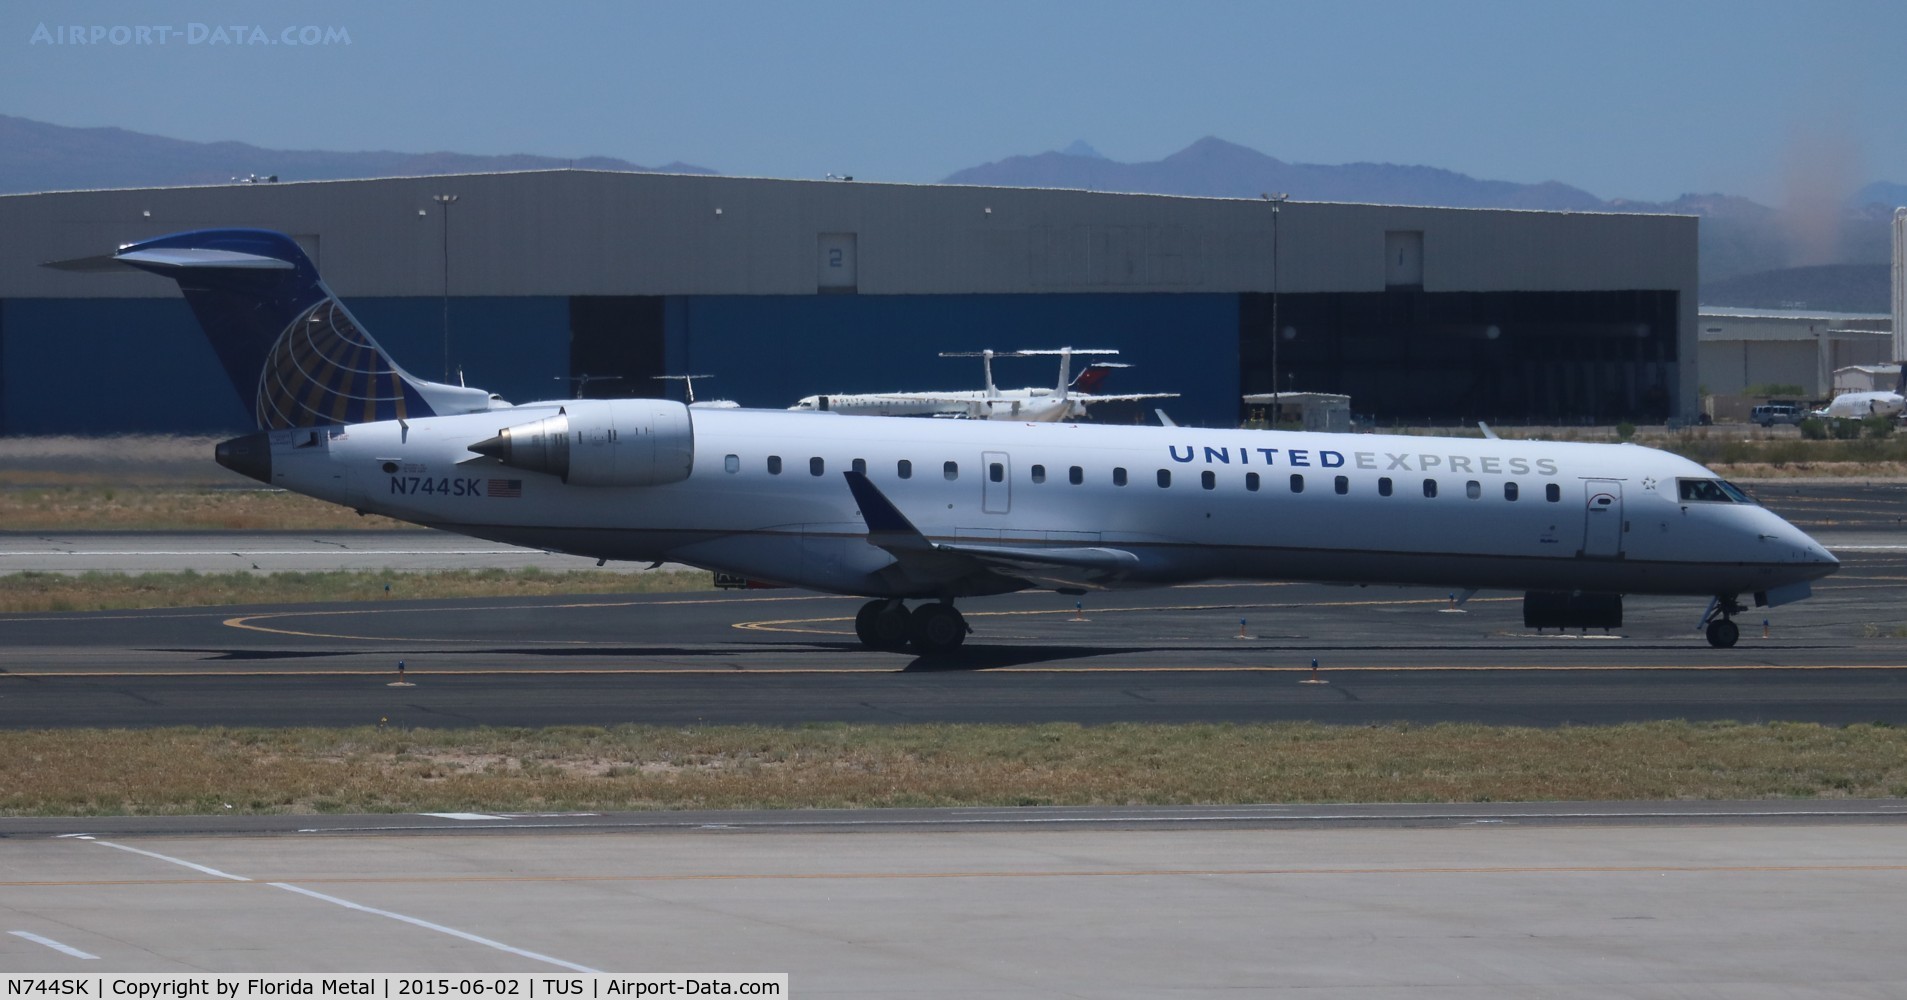 N744SK, 2005 Bombardier CRJ-701 (CL-600-2C10) Regional Jet C/N 10200, United Express